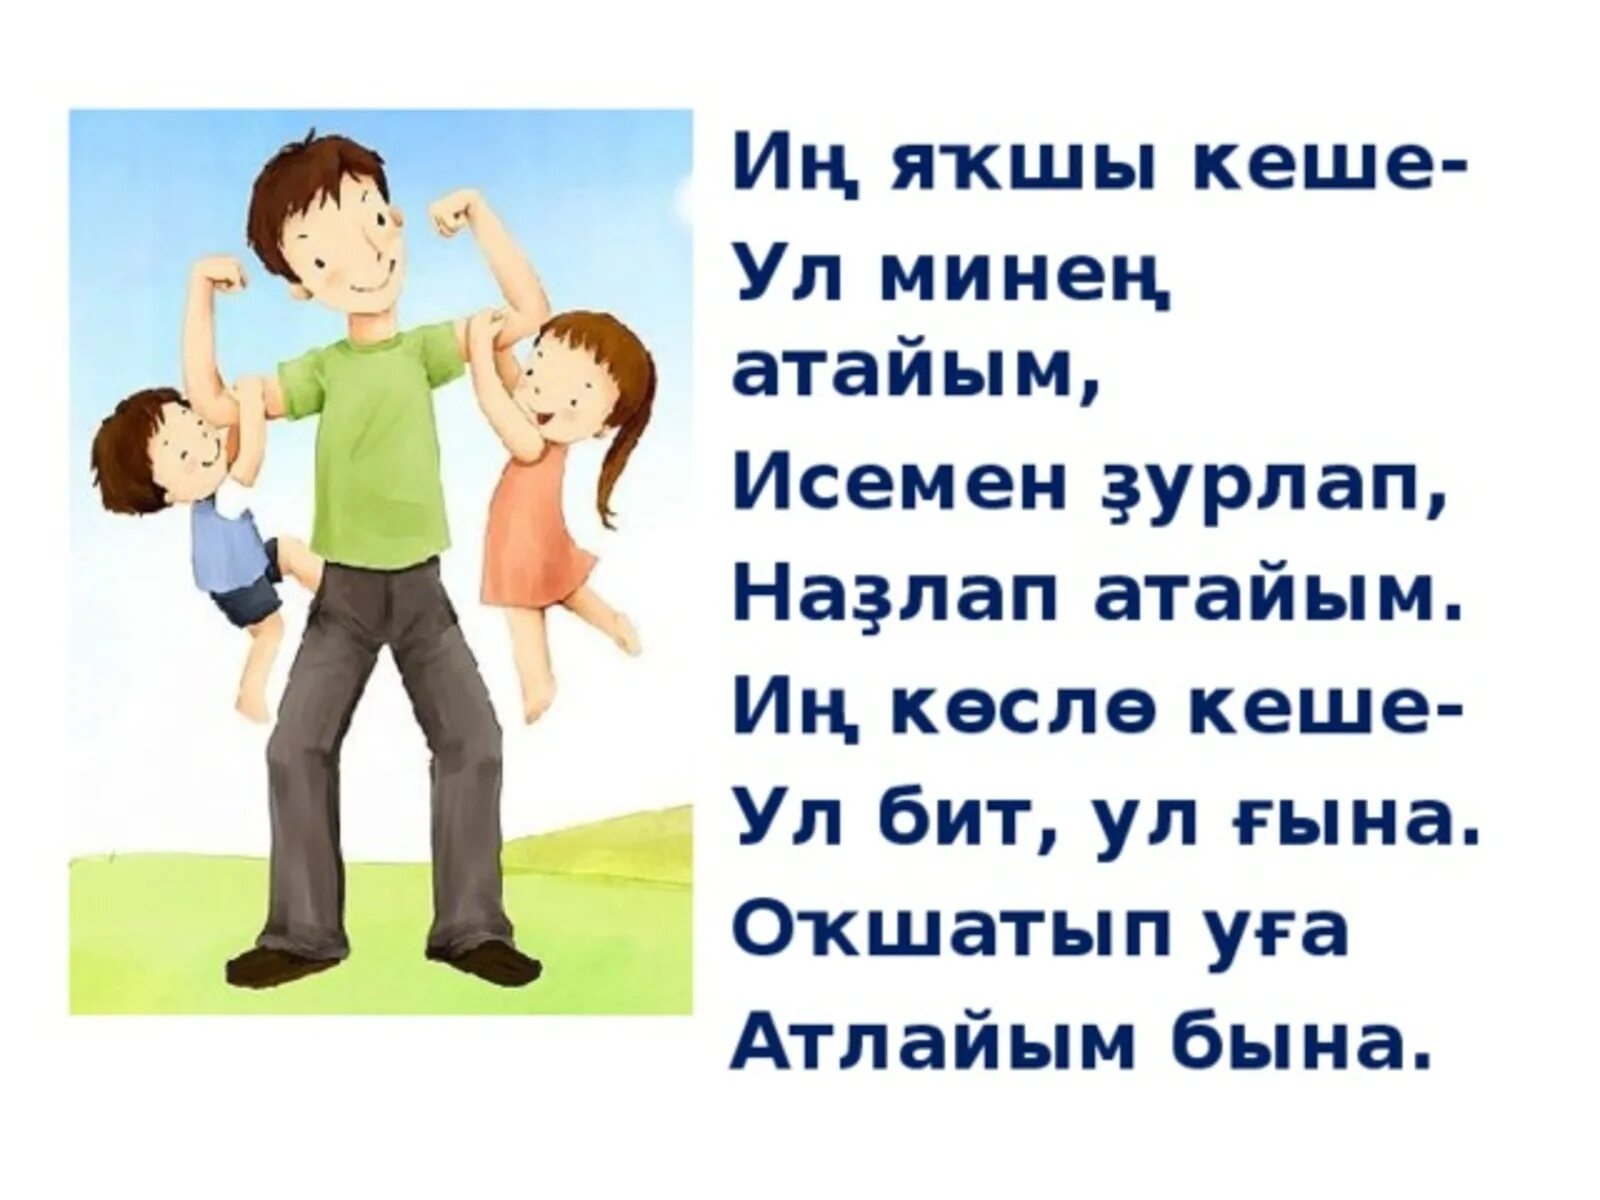 Песня называют папа. Стихи для малышей на башкирском языке. Стихи про папу на башкирском языке для детей. Стихи на башкирском языке для детей. Стих про папу на башкирском языке.